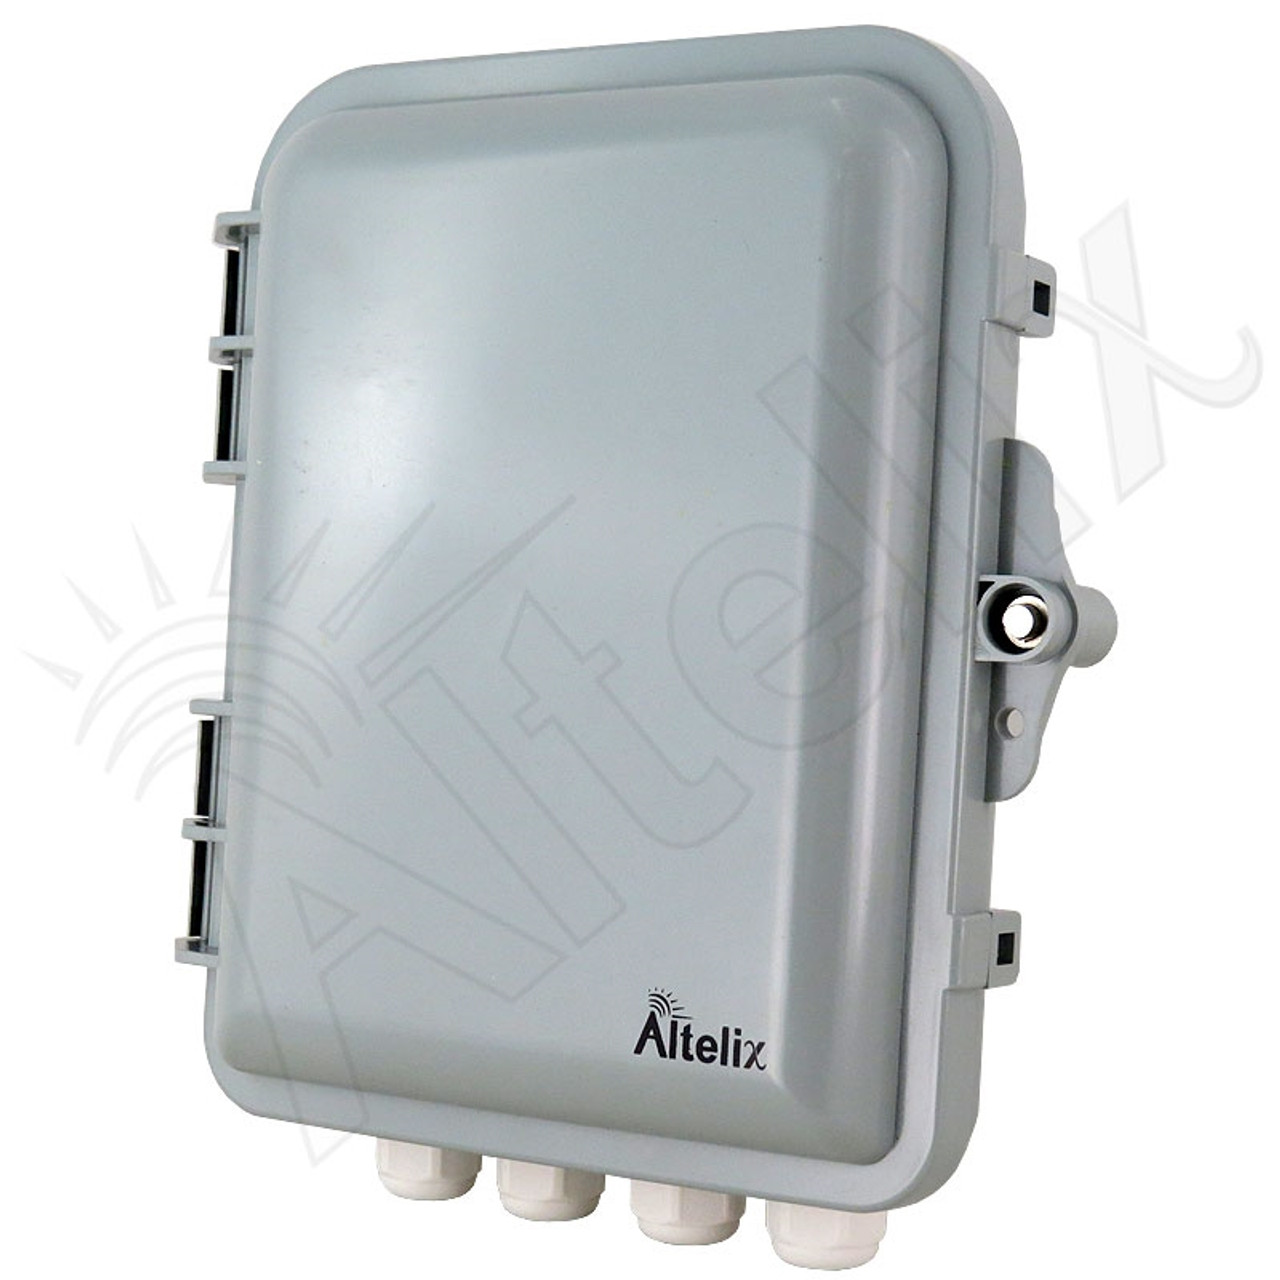 Altelix 9x8x3 IP66 NEMA 4X PC+ABS Weatherproof Utility Box with Hinged Door  - Altelix